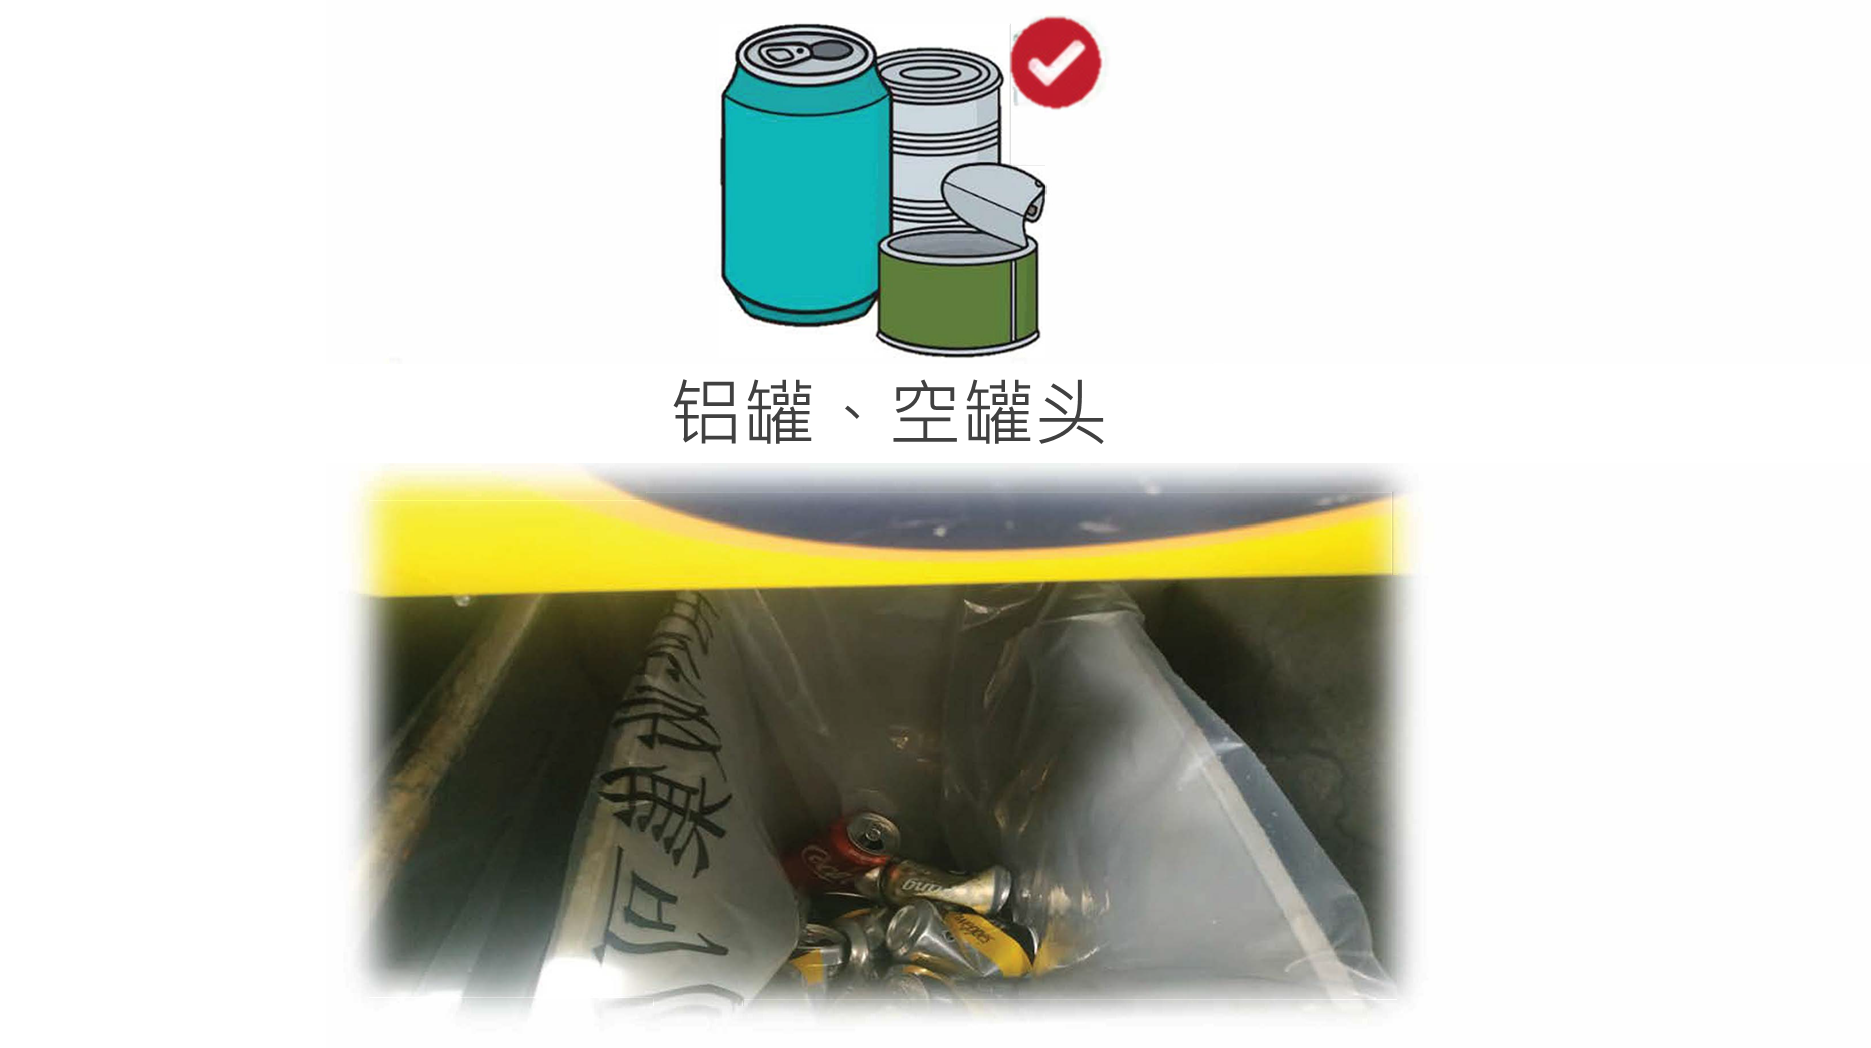 相片显示干净回收铝罐,空罐头的贴士 - 去招纸,冲干净